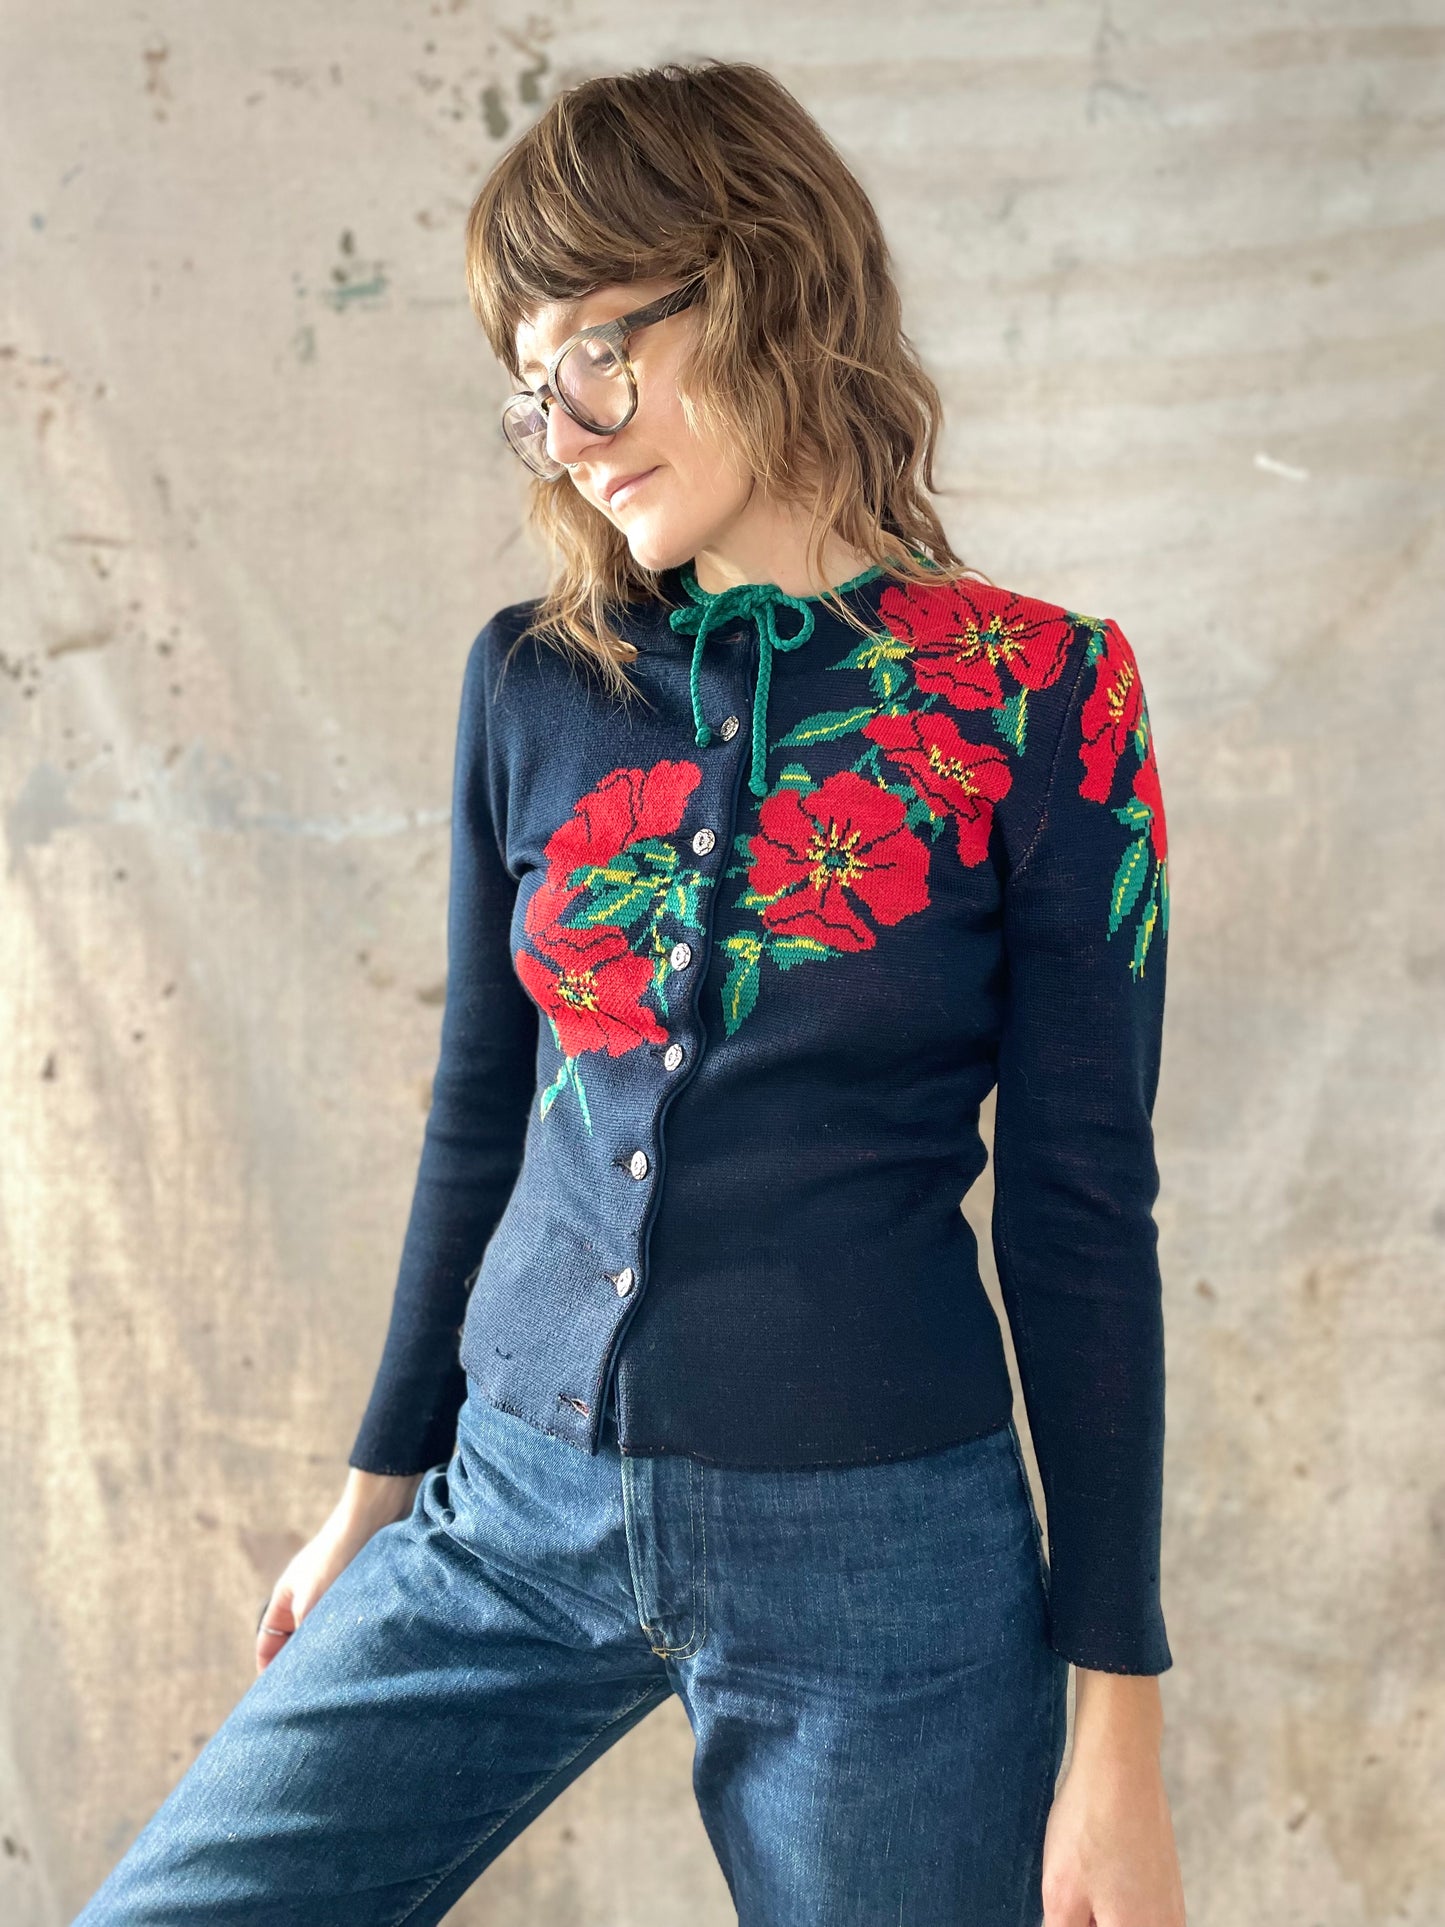 40s Catalina Poinsettia Holiday Sweater